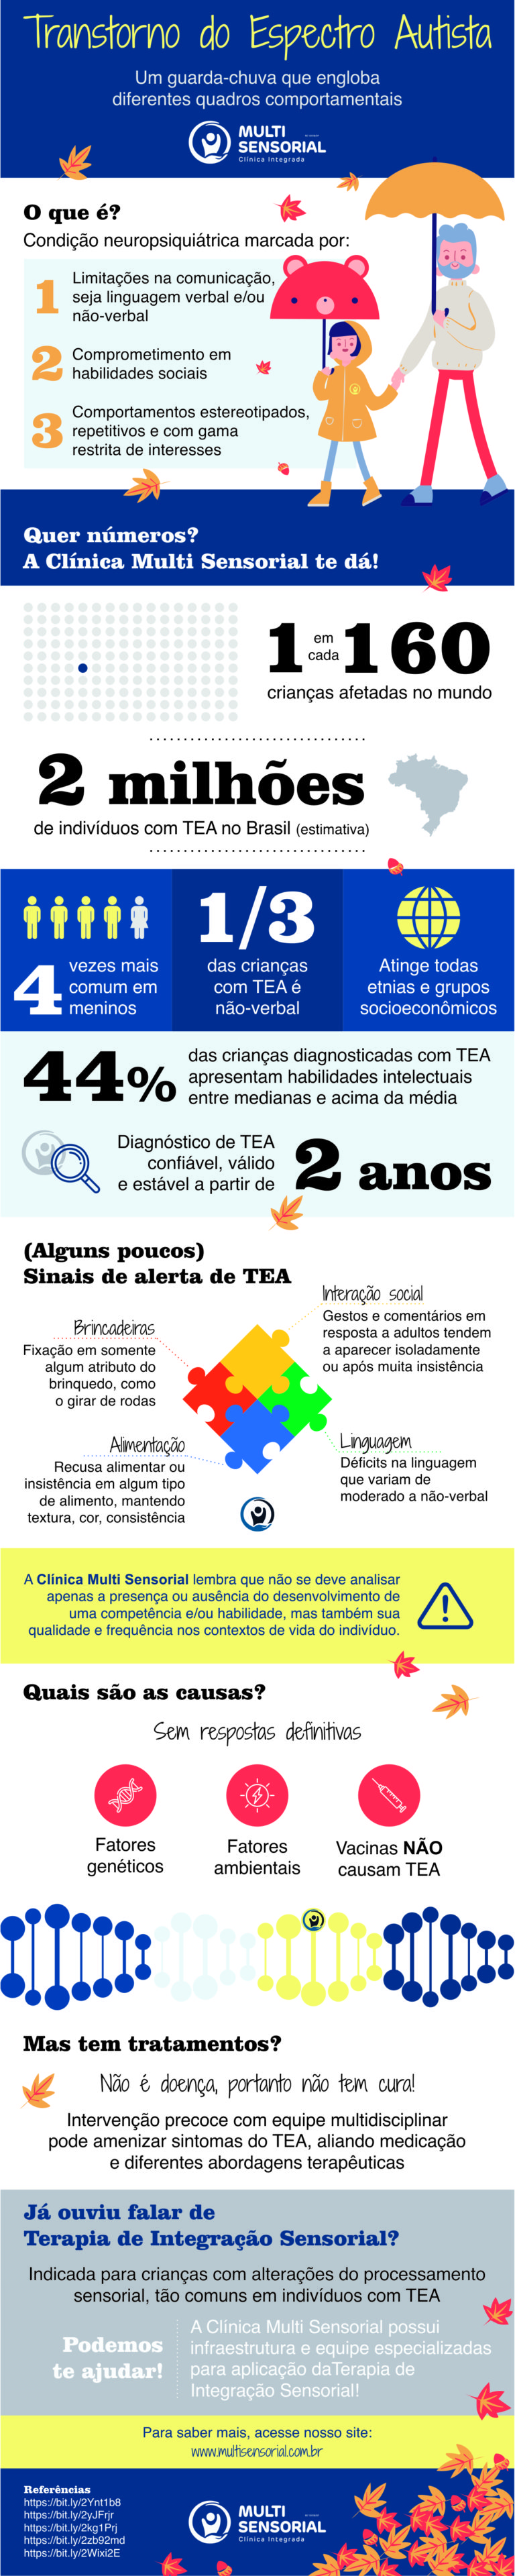 Infográfico Transtorno do Espectro Autismo